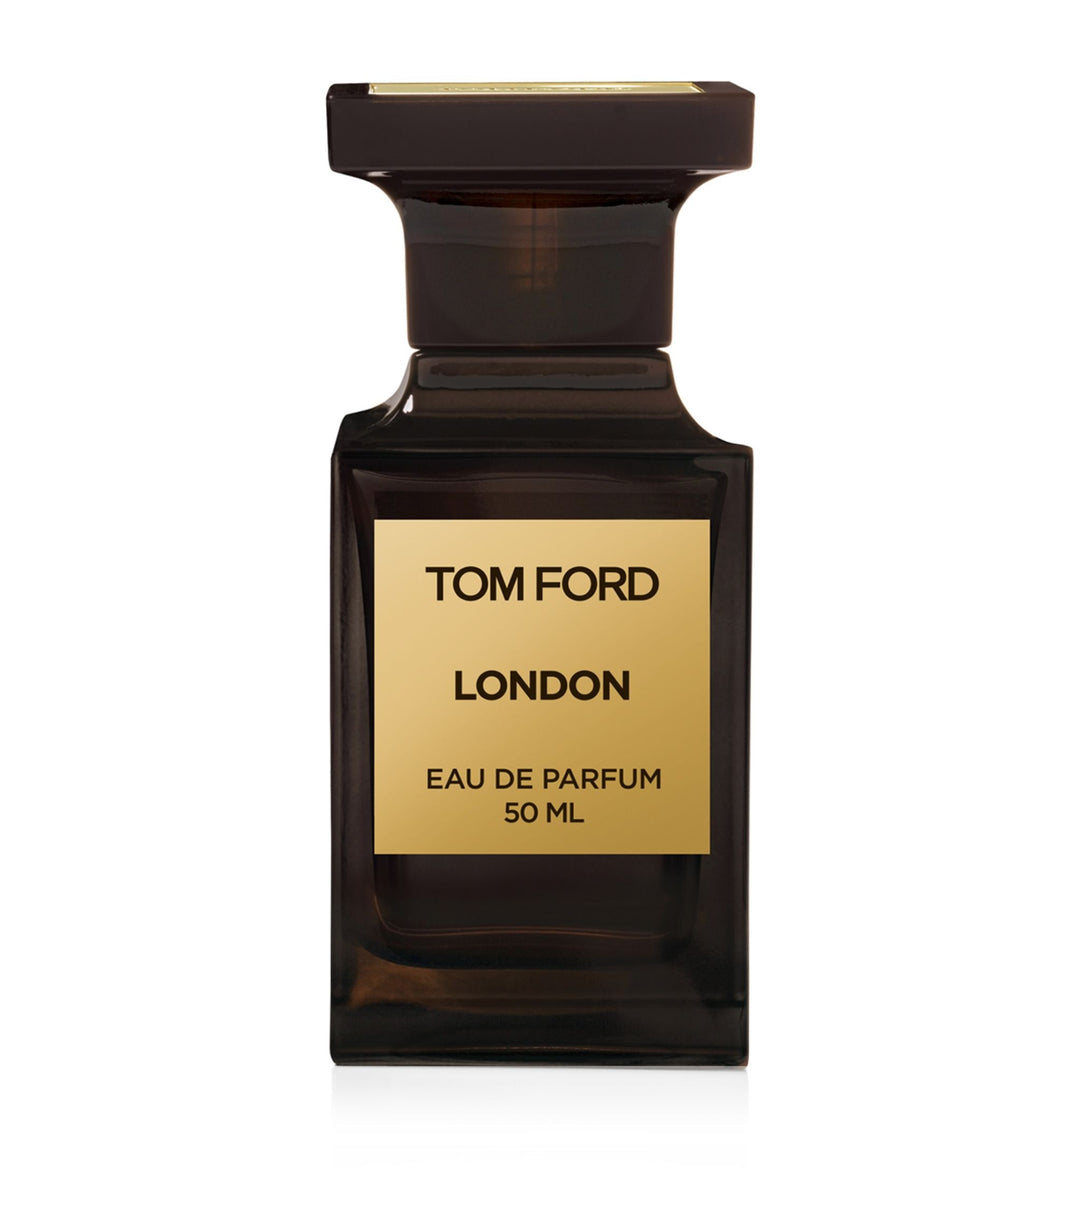 TOM FORD London Eau de Parfum